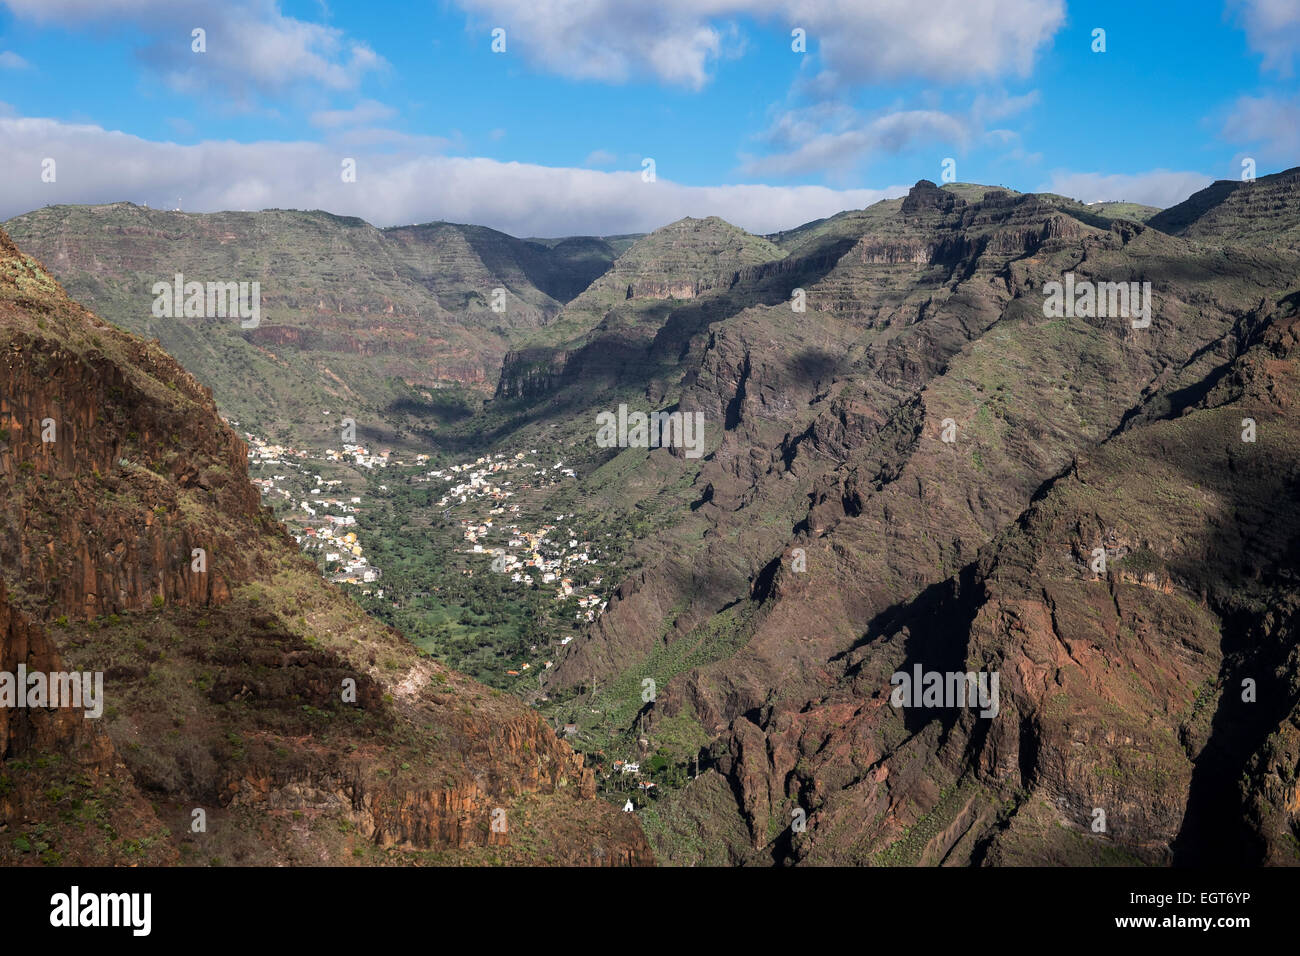 Valle Gran Rey, La Gomera, Canary Islands, Spain Stock Photo